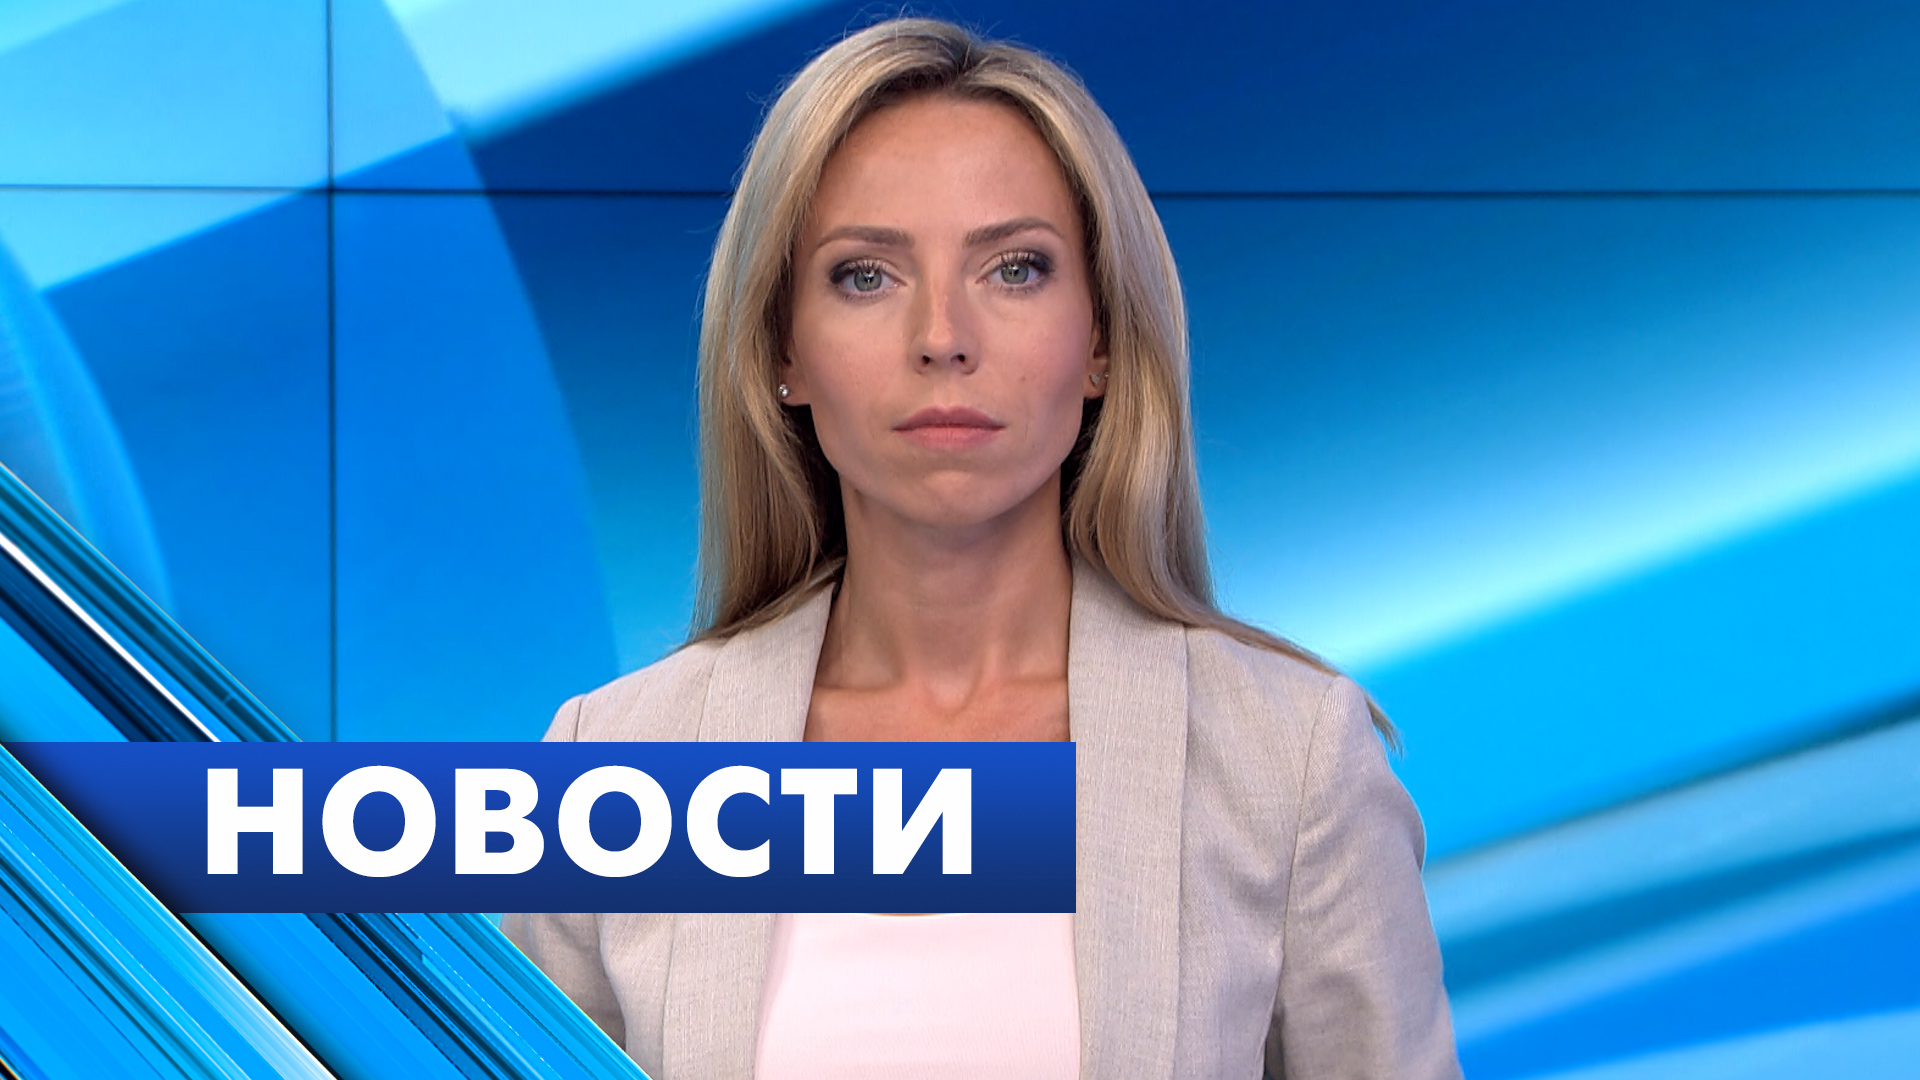 Главные новости Петербурга / 22 сентября